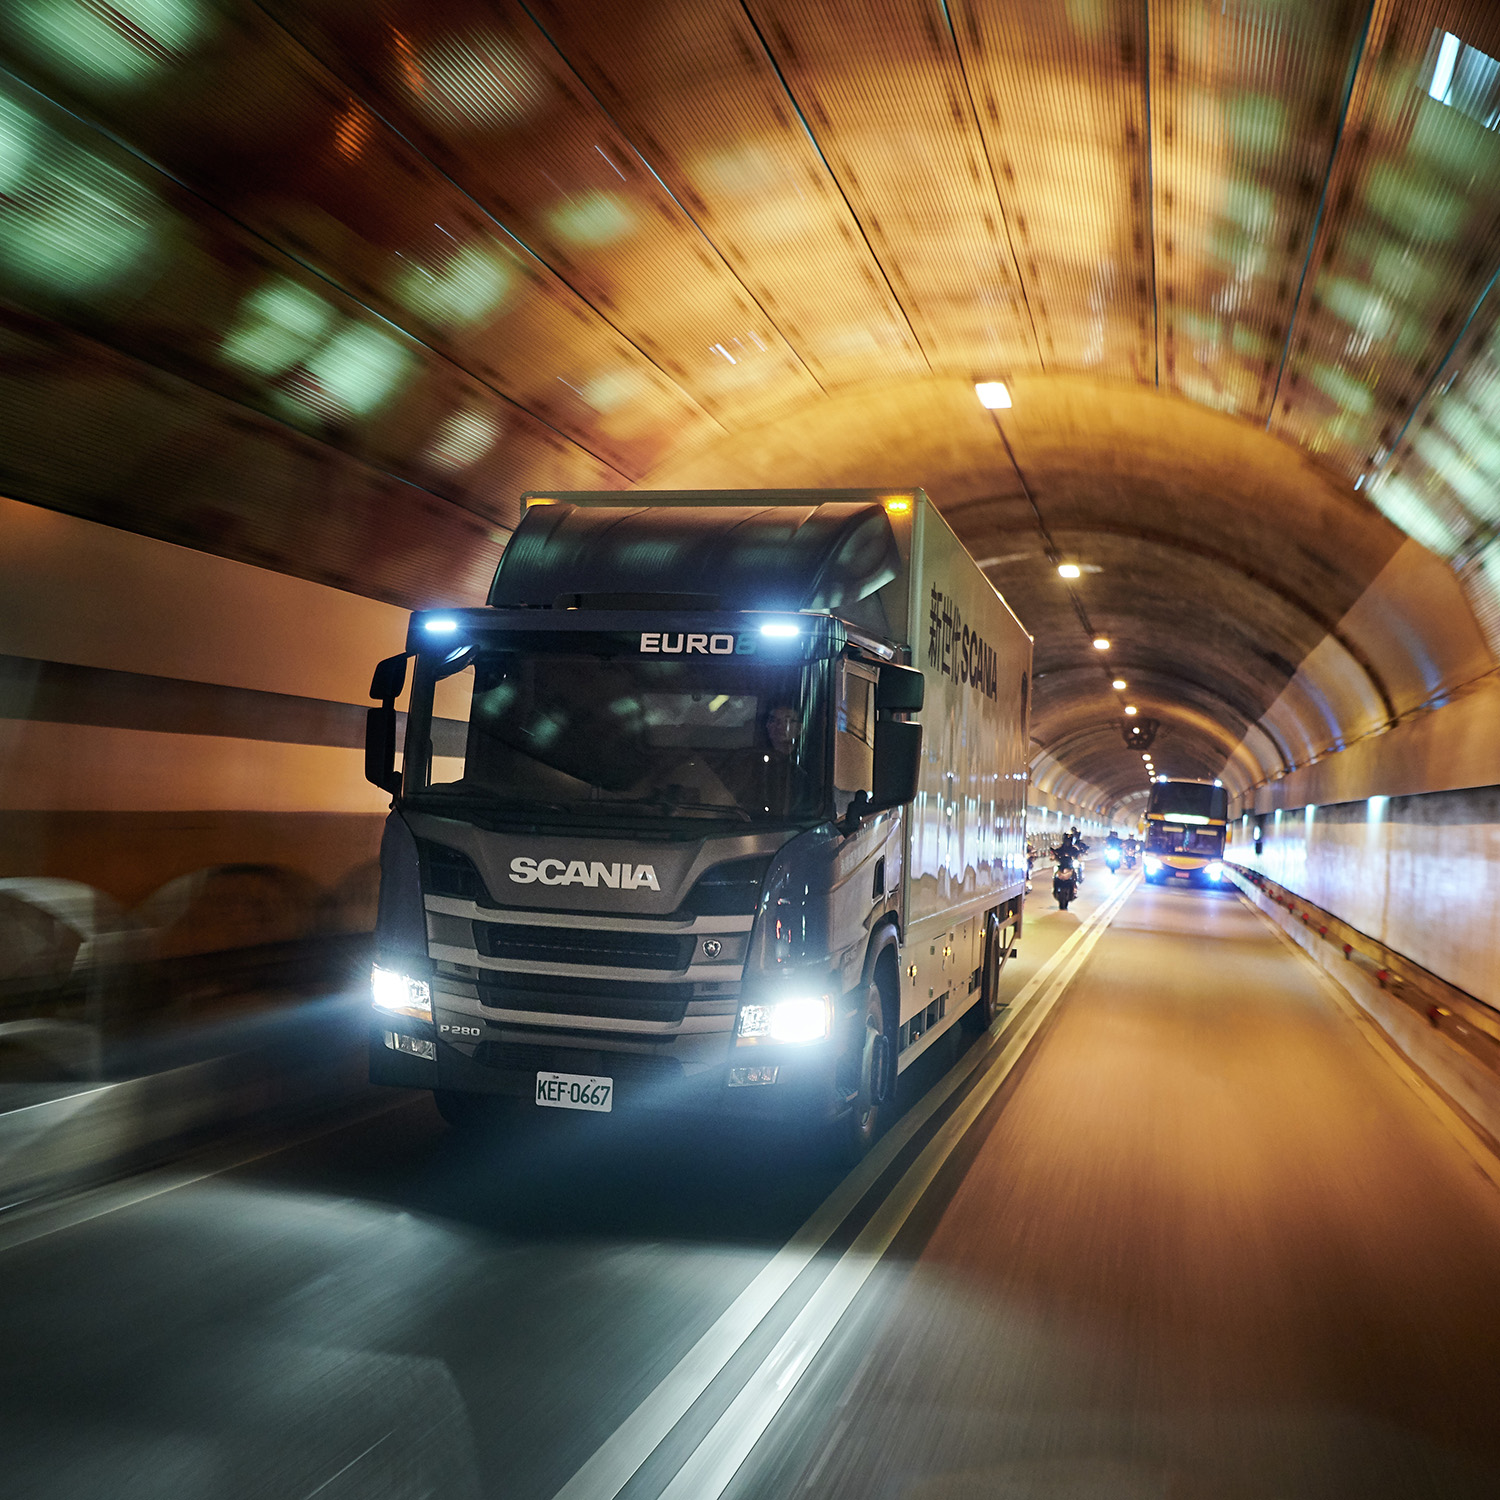 Scania propose un régulateur de vitesse qui anticipe le profil routier